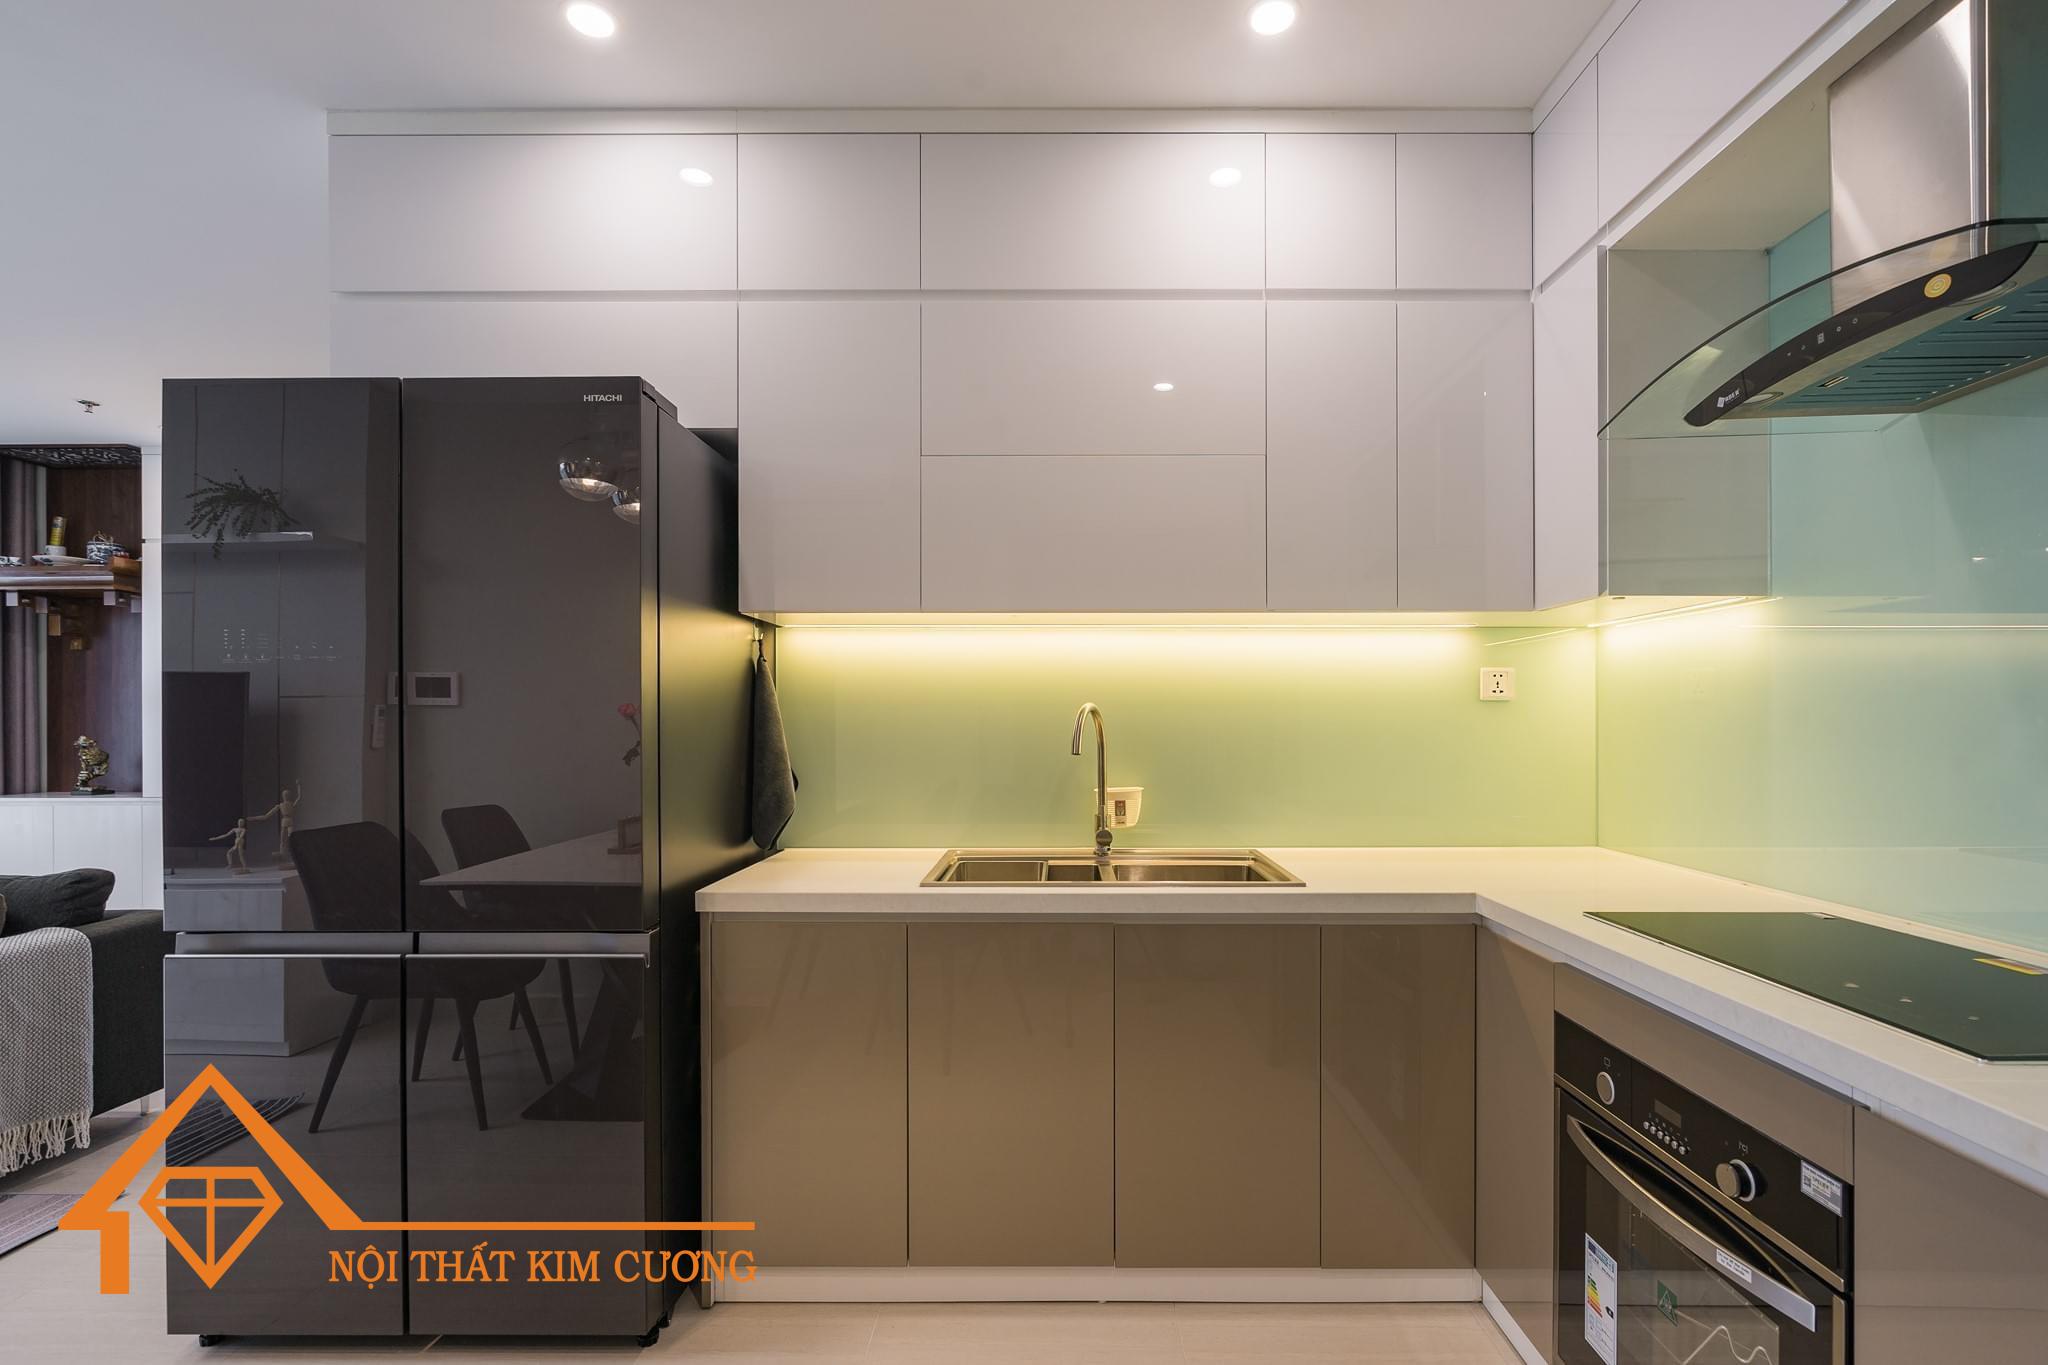 Sản phẩm Tủ bếp góc L TBL116 mang lại không gian bếp tiện nghi và khoa học, mang đến sự tiện lợi và vẻ đẹp cho căn bếp của bạn. Xem hình ảnh để tìm hiểu thêm về sản phẩm này.